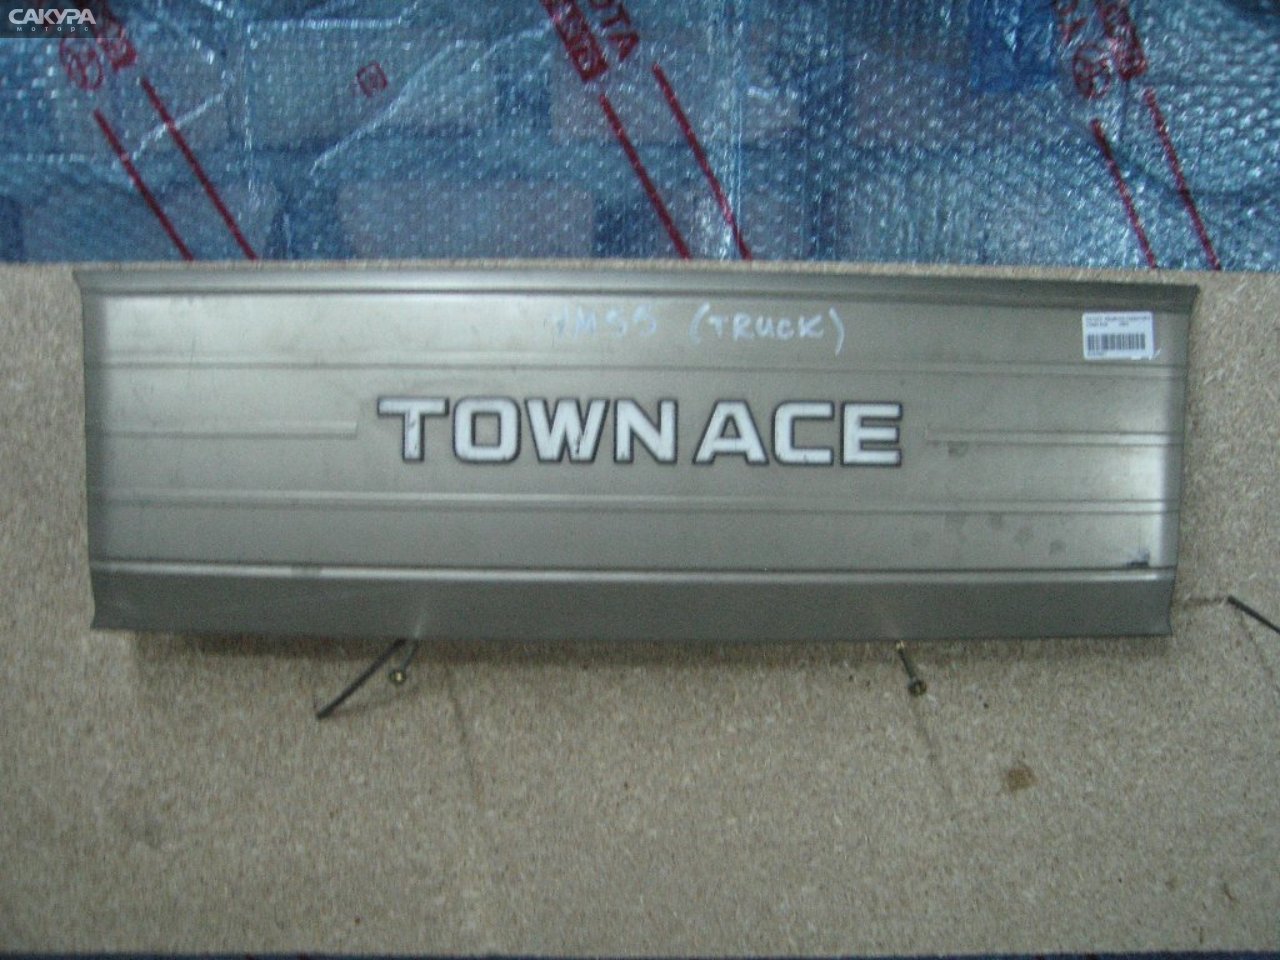 Решетка радиатора Toyota Townace YM55: купить в Сакура Абакан.